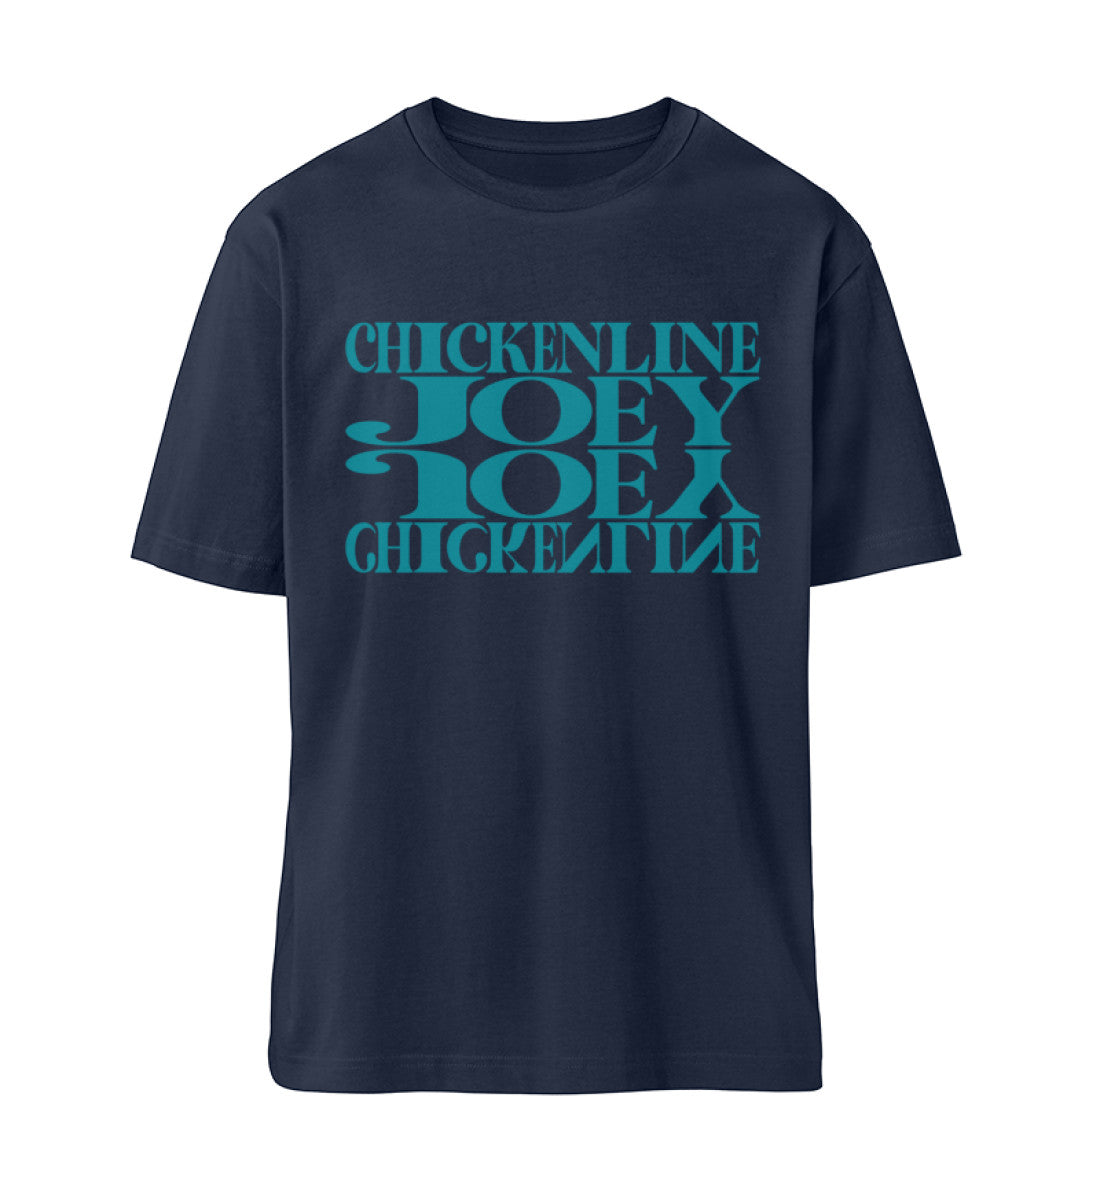 French Navy Blue farbiges T-Shirt Unisex Relaxed Fit für Frauen und Männer bedruckt mit dem Design der Roger Rockawoo Kollektion Downhill Chickenline Joey